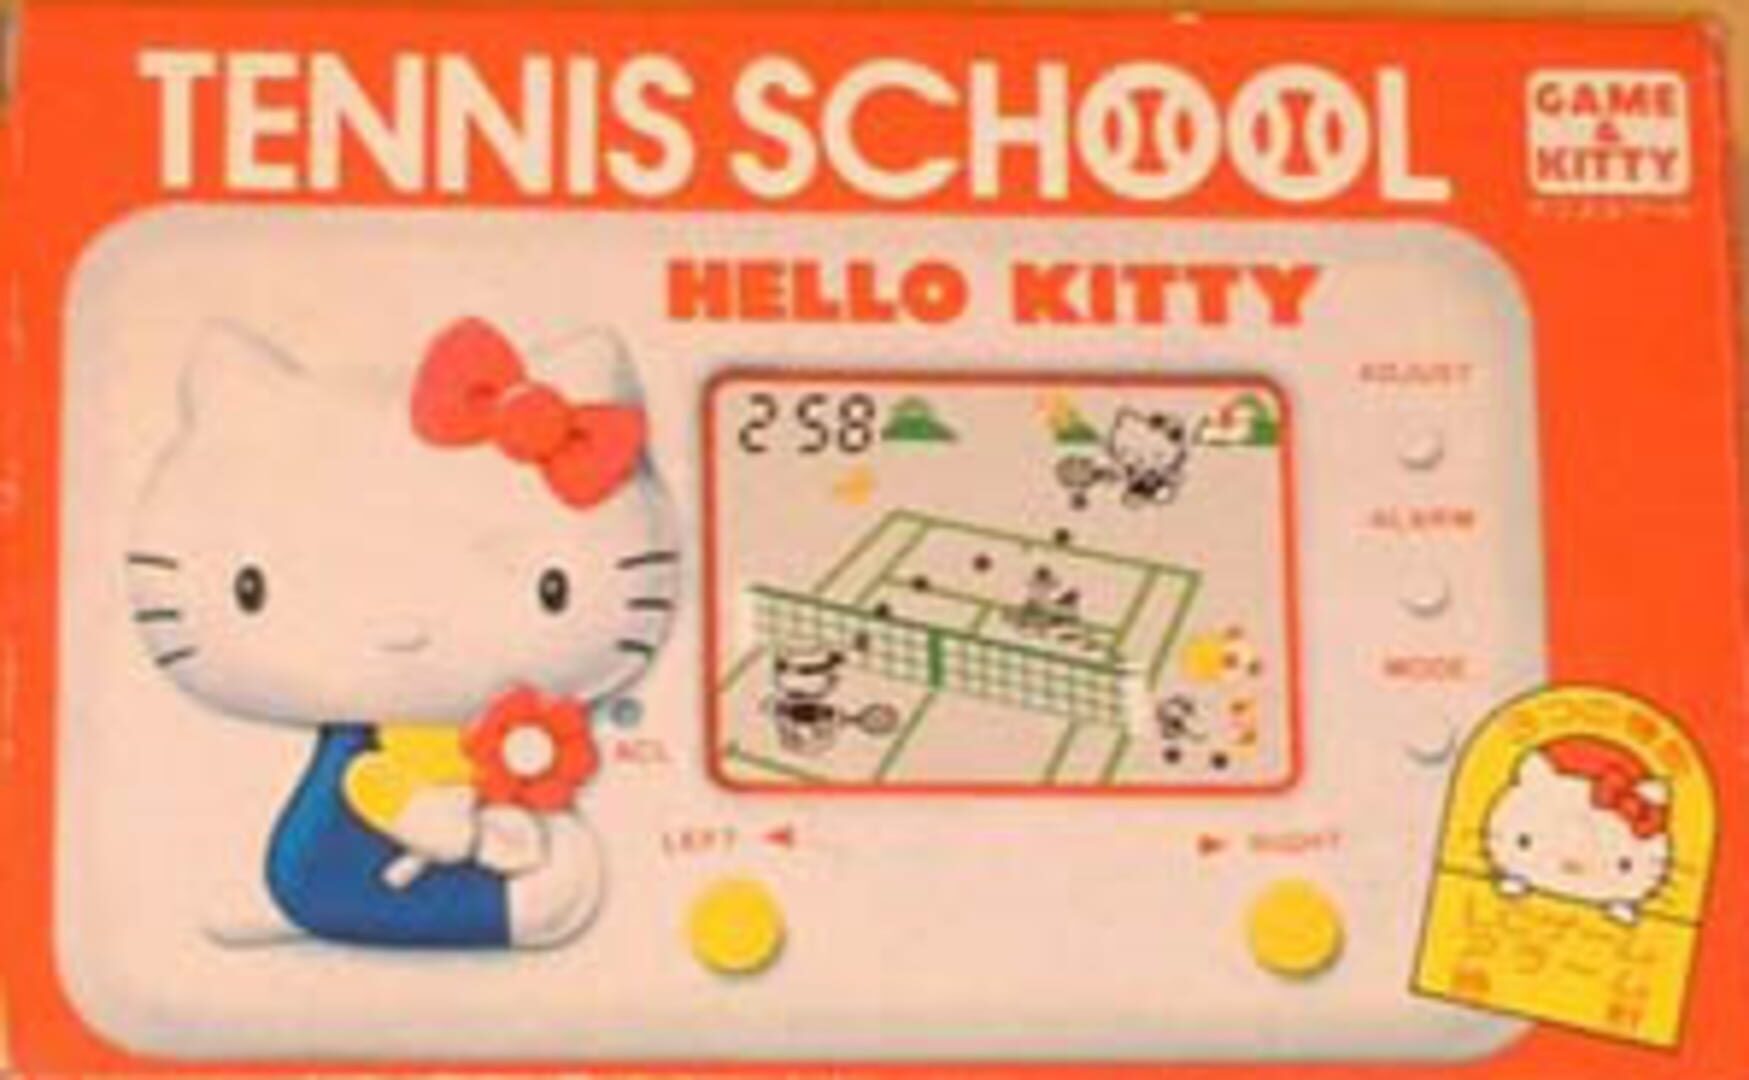 Hello Kitty: Tennis School featured image